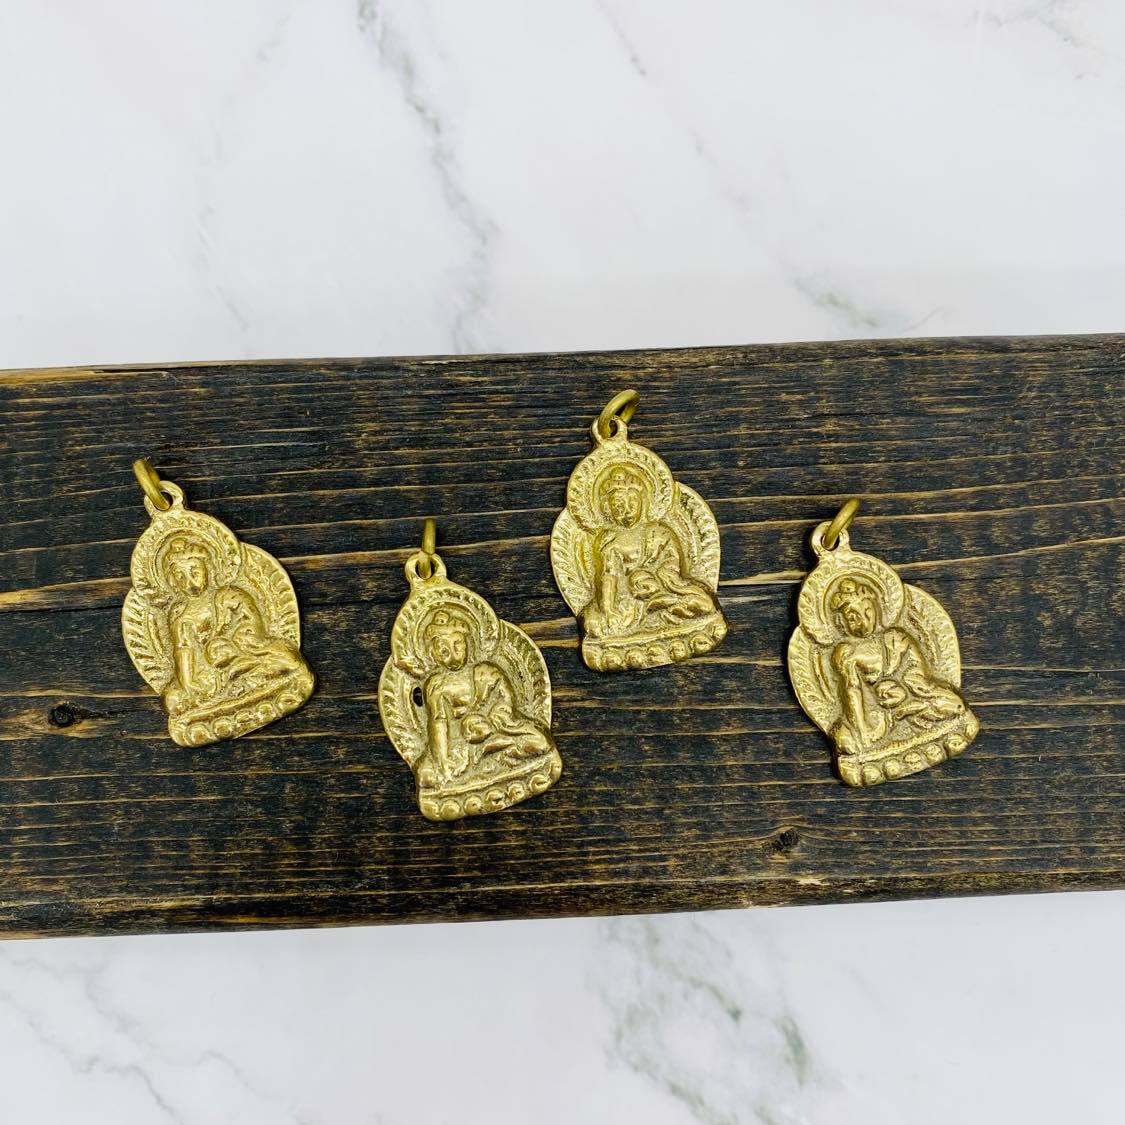 Buddha Charm, Gold Buddha Pendant, Handmade Healing Buddha Necklace, Buddha Talisman, Meditation Jewelry, Spiritual Gift